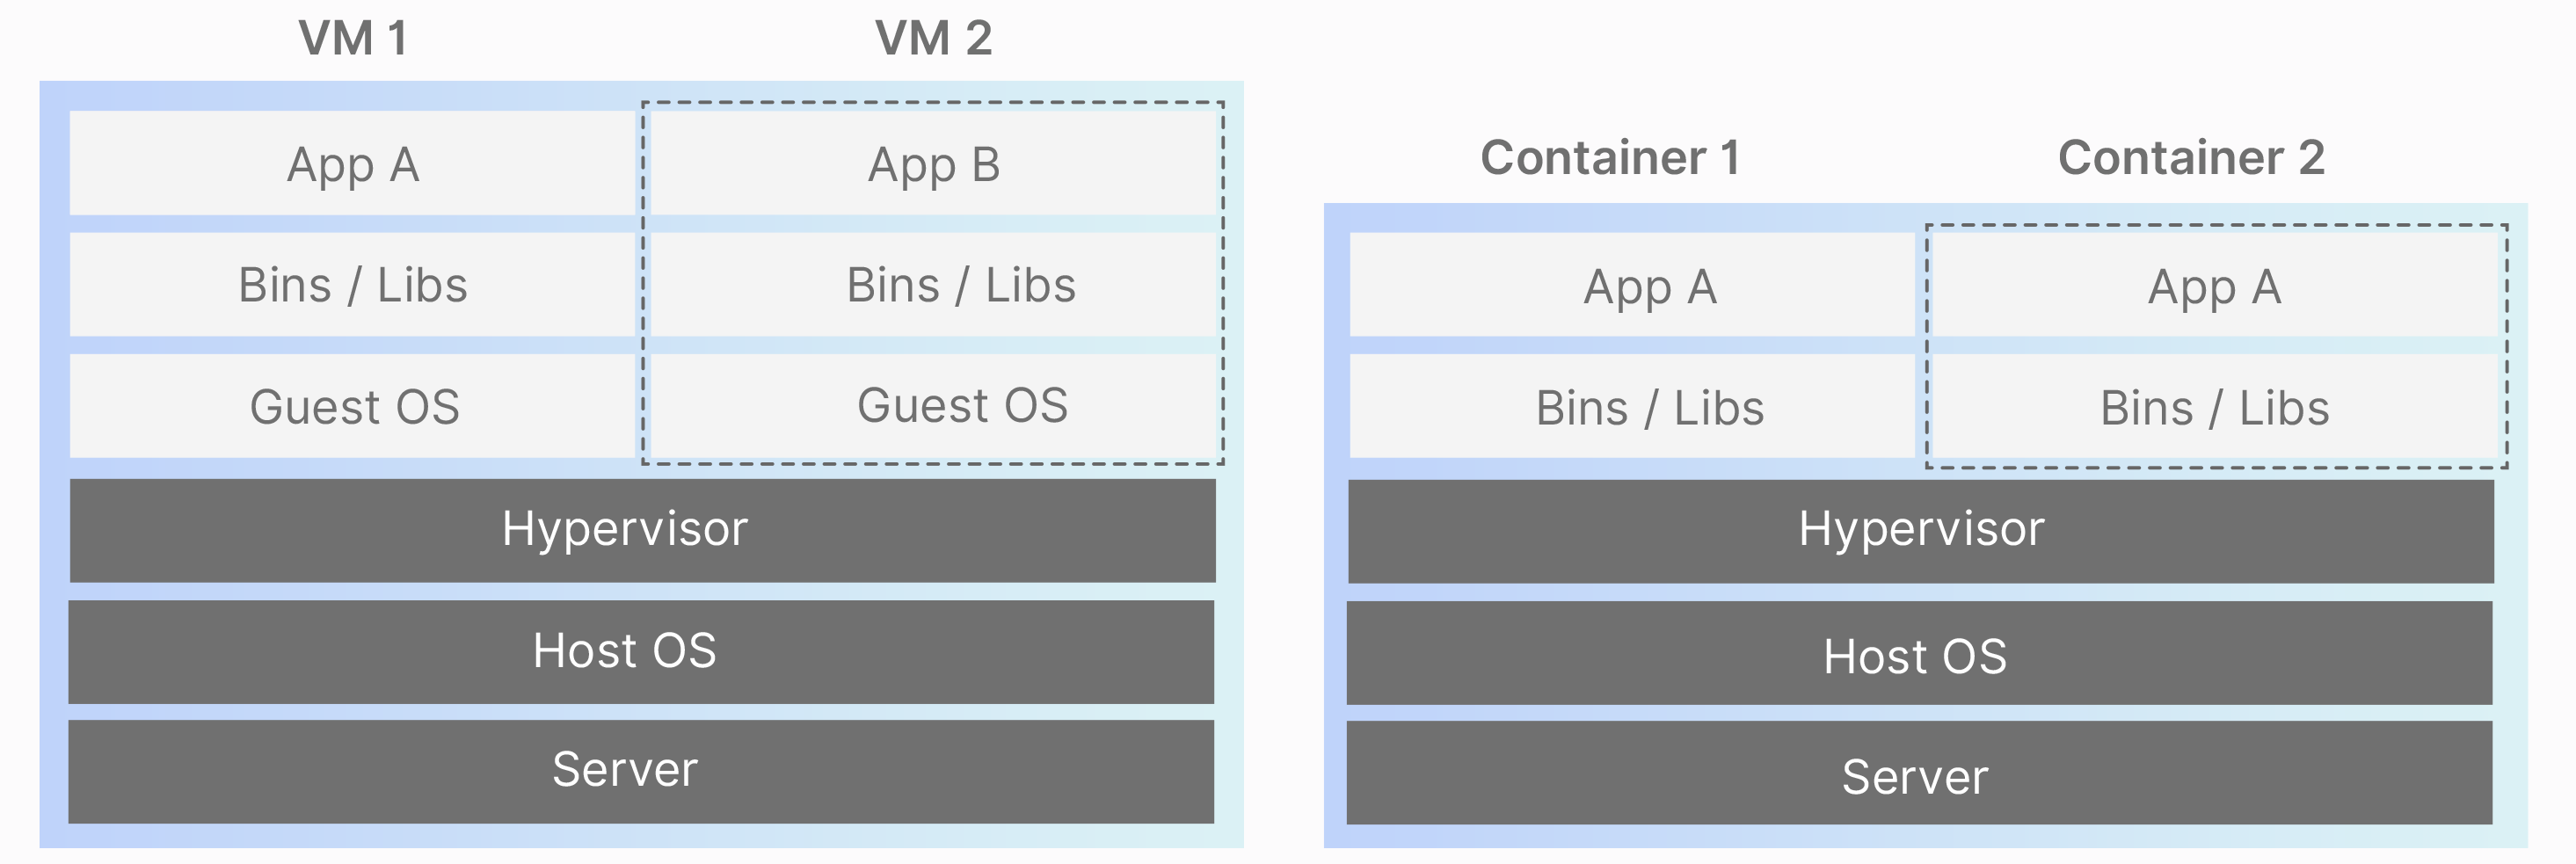 Vergleich von Virtualisierung und Containerisierung